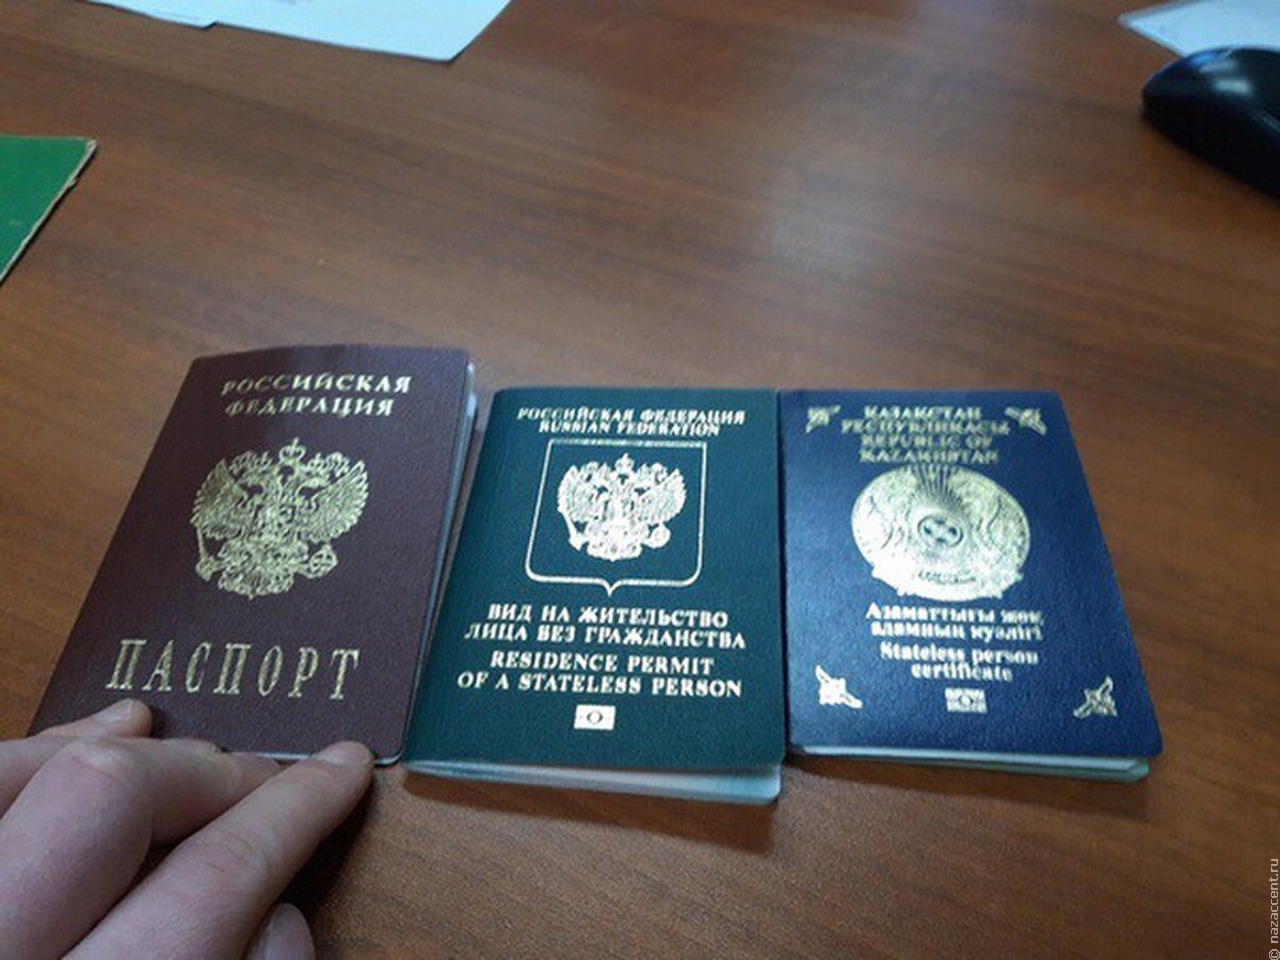 Вид на жительство. Лицо без гражданства. Вид на жительство ЛБГ РФ. Российское гражданство гражданам казахстана